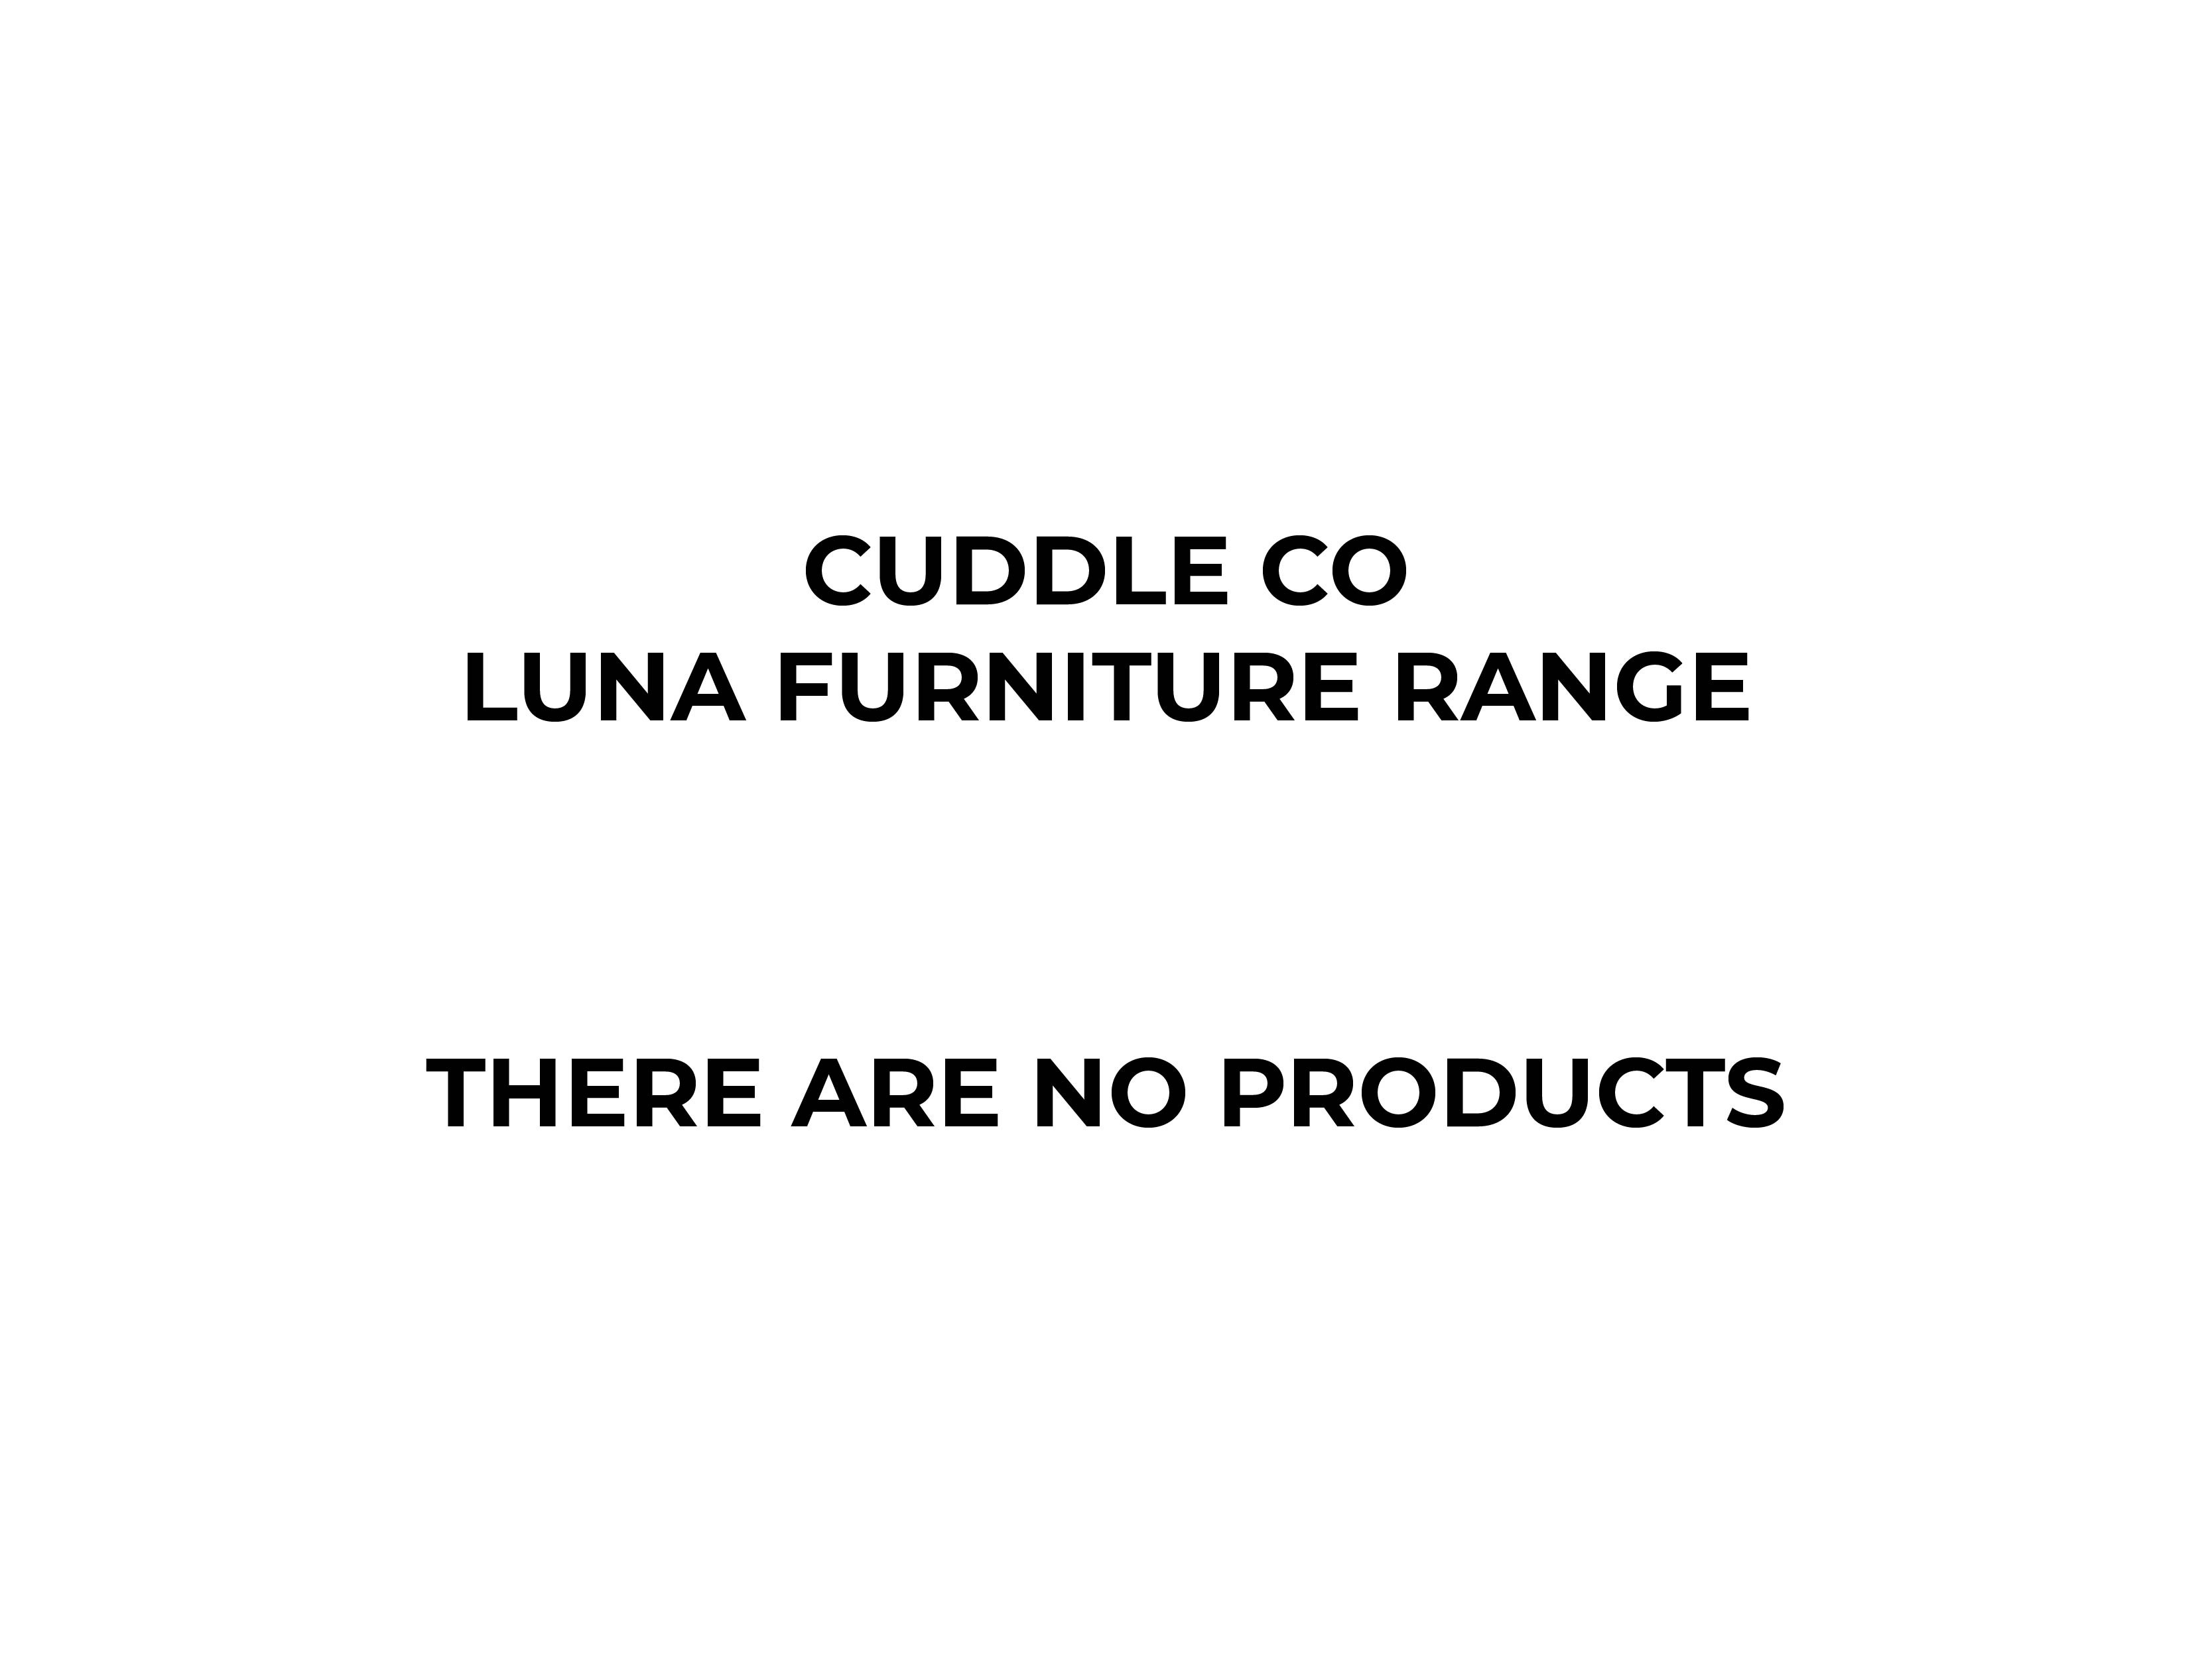 CuddleCo Luna Furniture Range